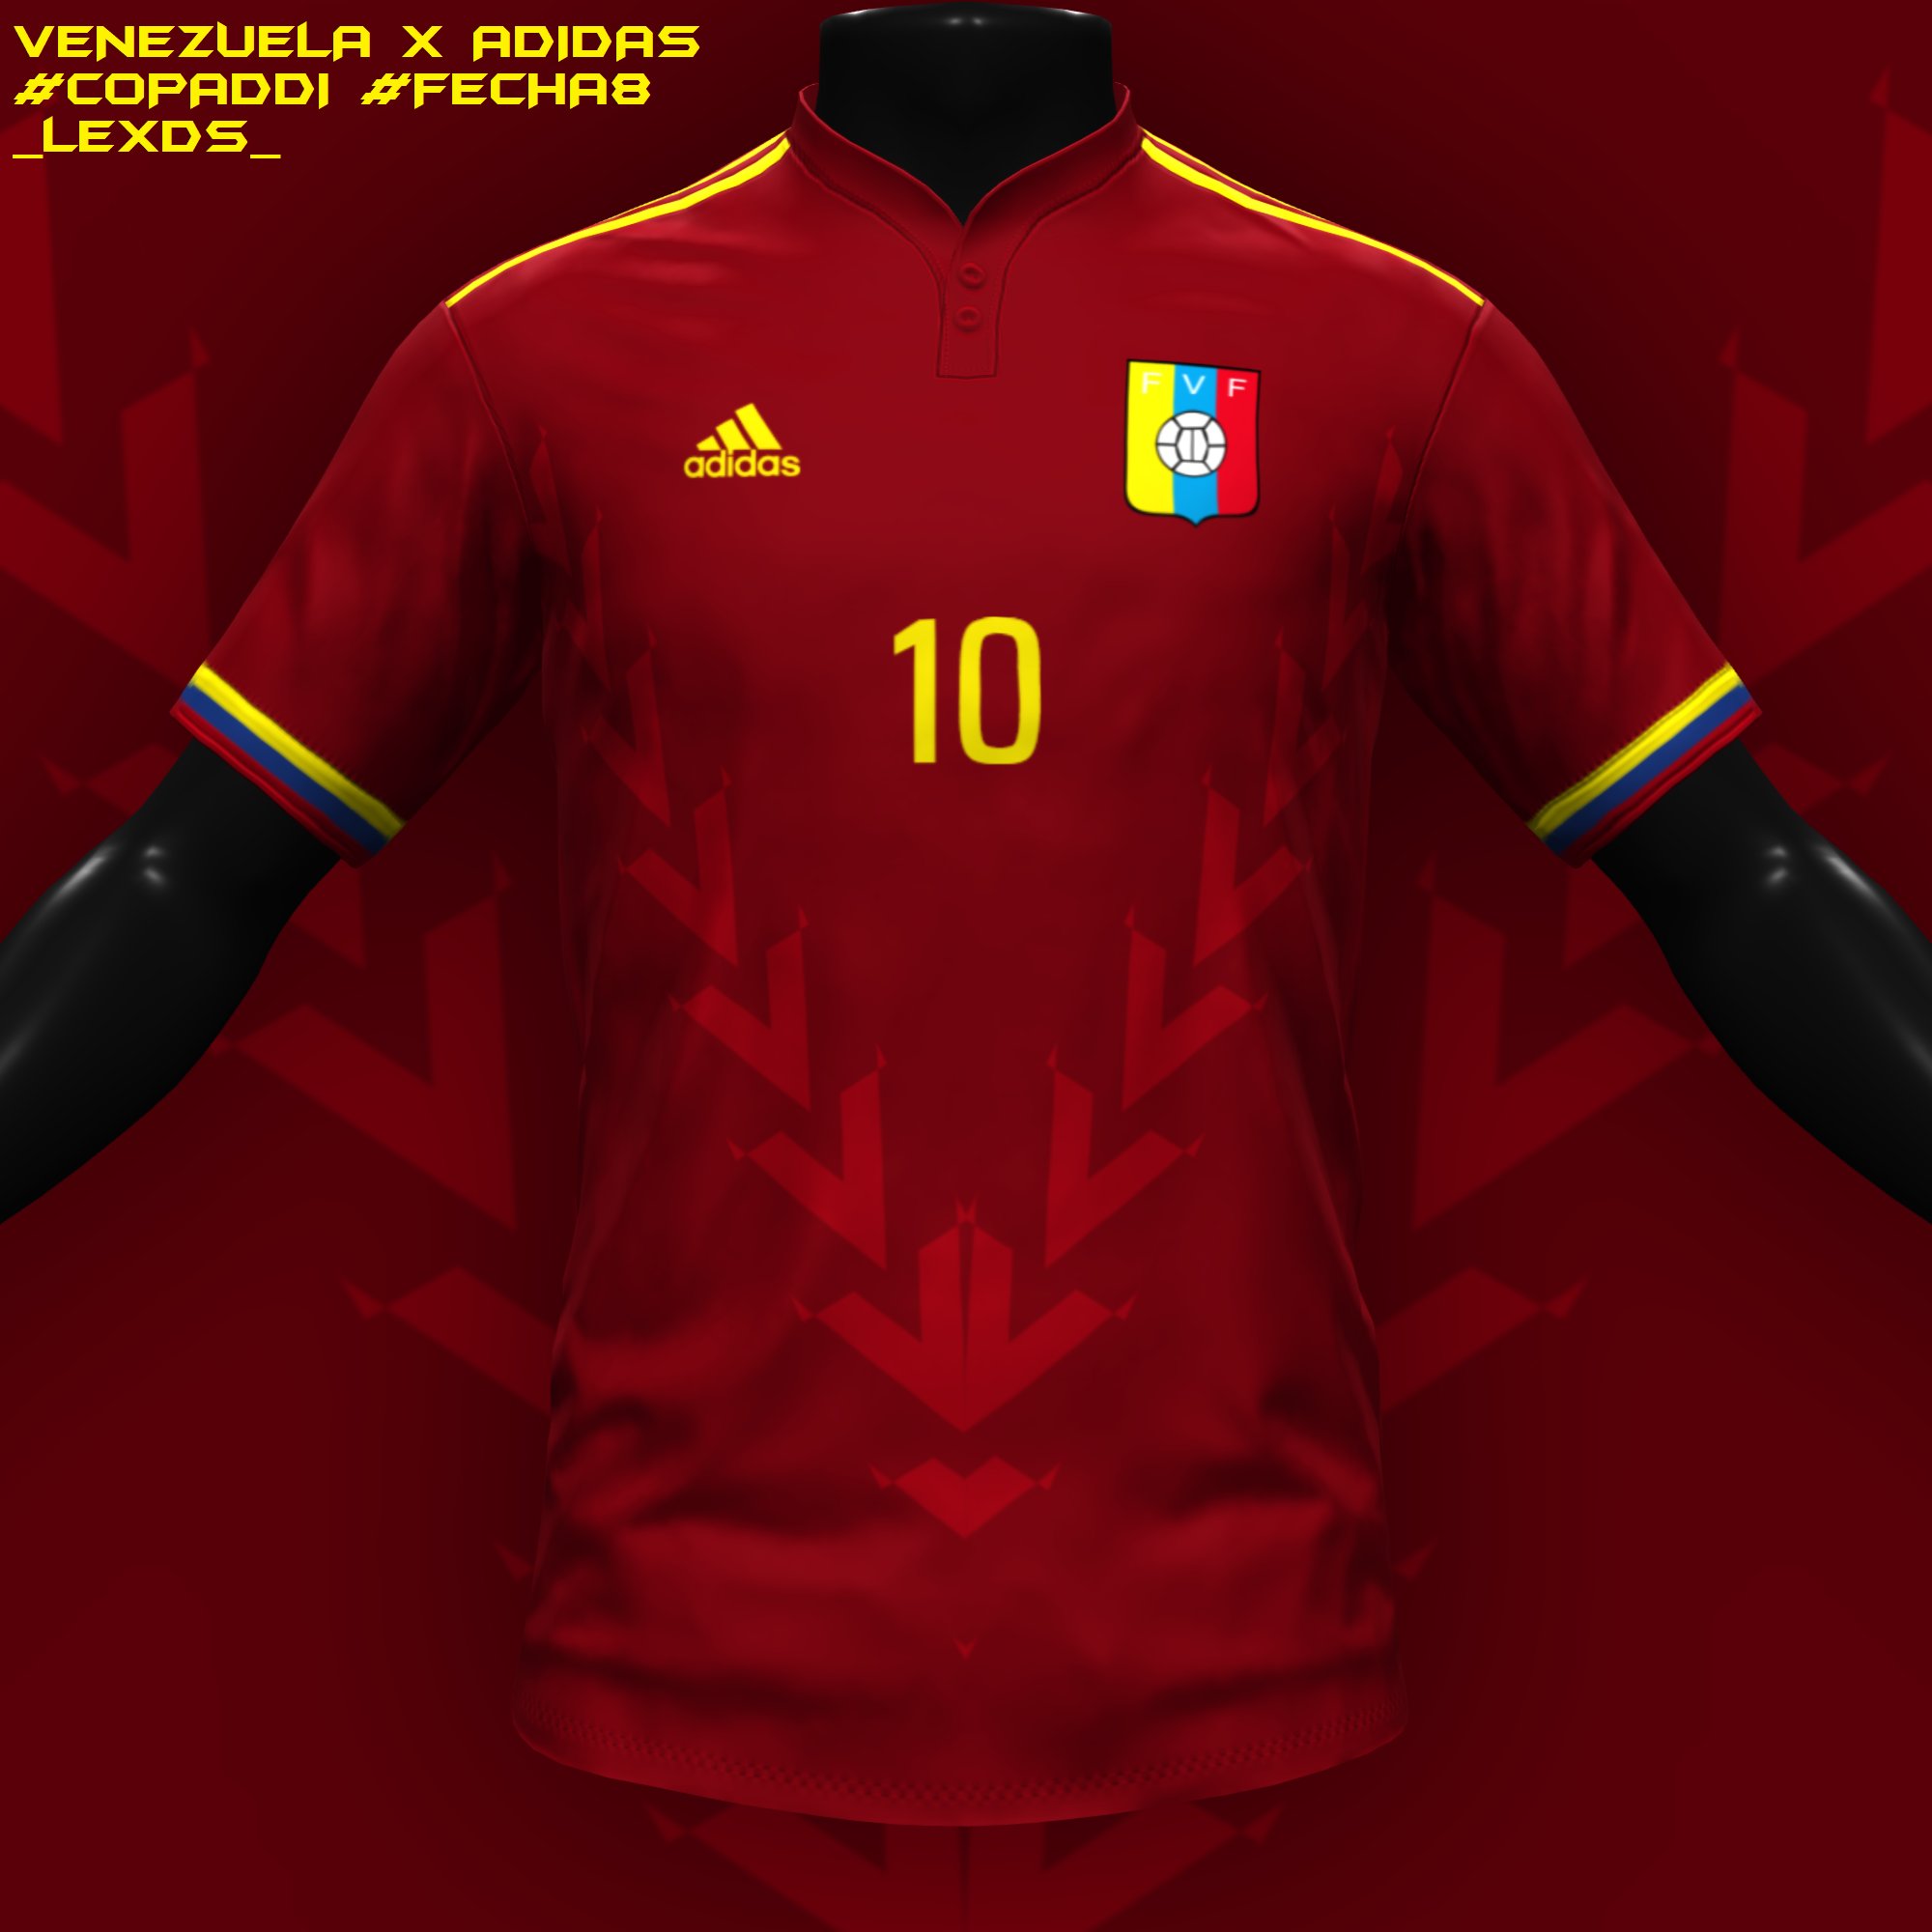 تويتر \ lexds على تويتر: "Venezuela Adidas Inspirada en uniforme de Simón Bolivar #CopaDDI #Fecha8 @DDI_oficial https://t.co/nG0P53sq8l"